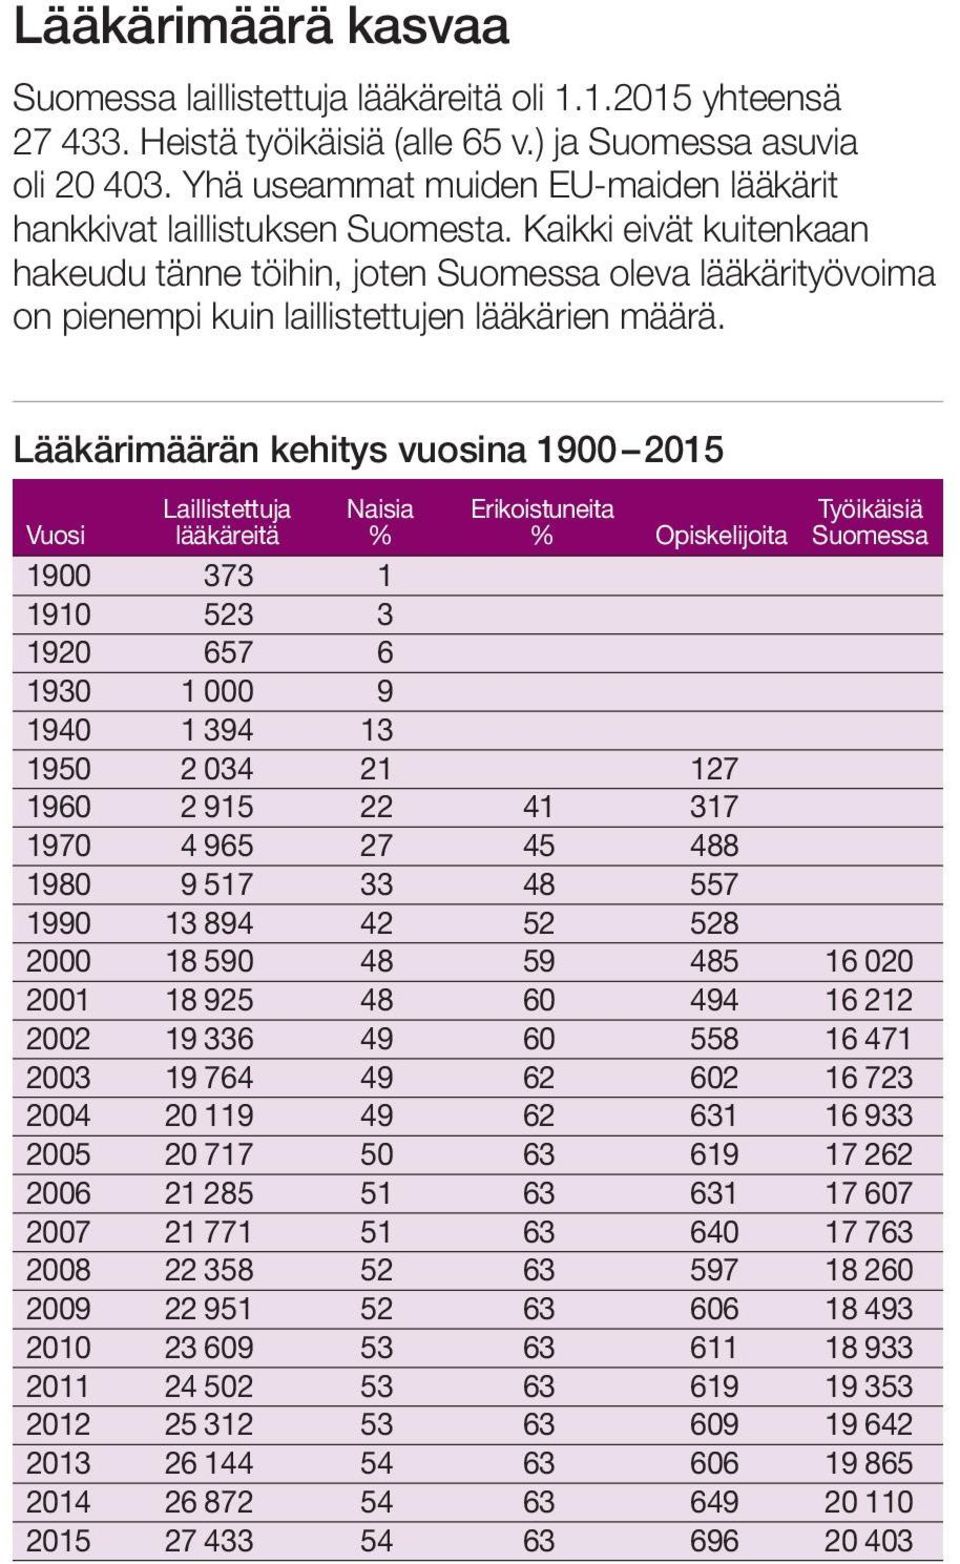 Kaikki eivät kuitenkaan hakeudu tänne töihin, joten Suomessa oleva lääkärityövoima on pienempi kuin laillistettujen lääkärien määrä.